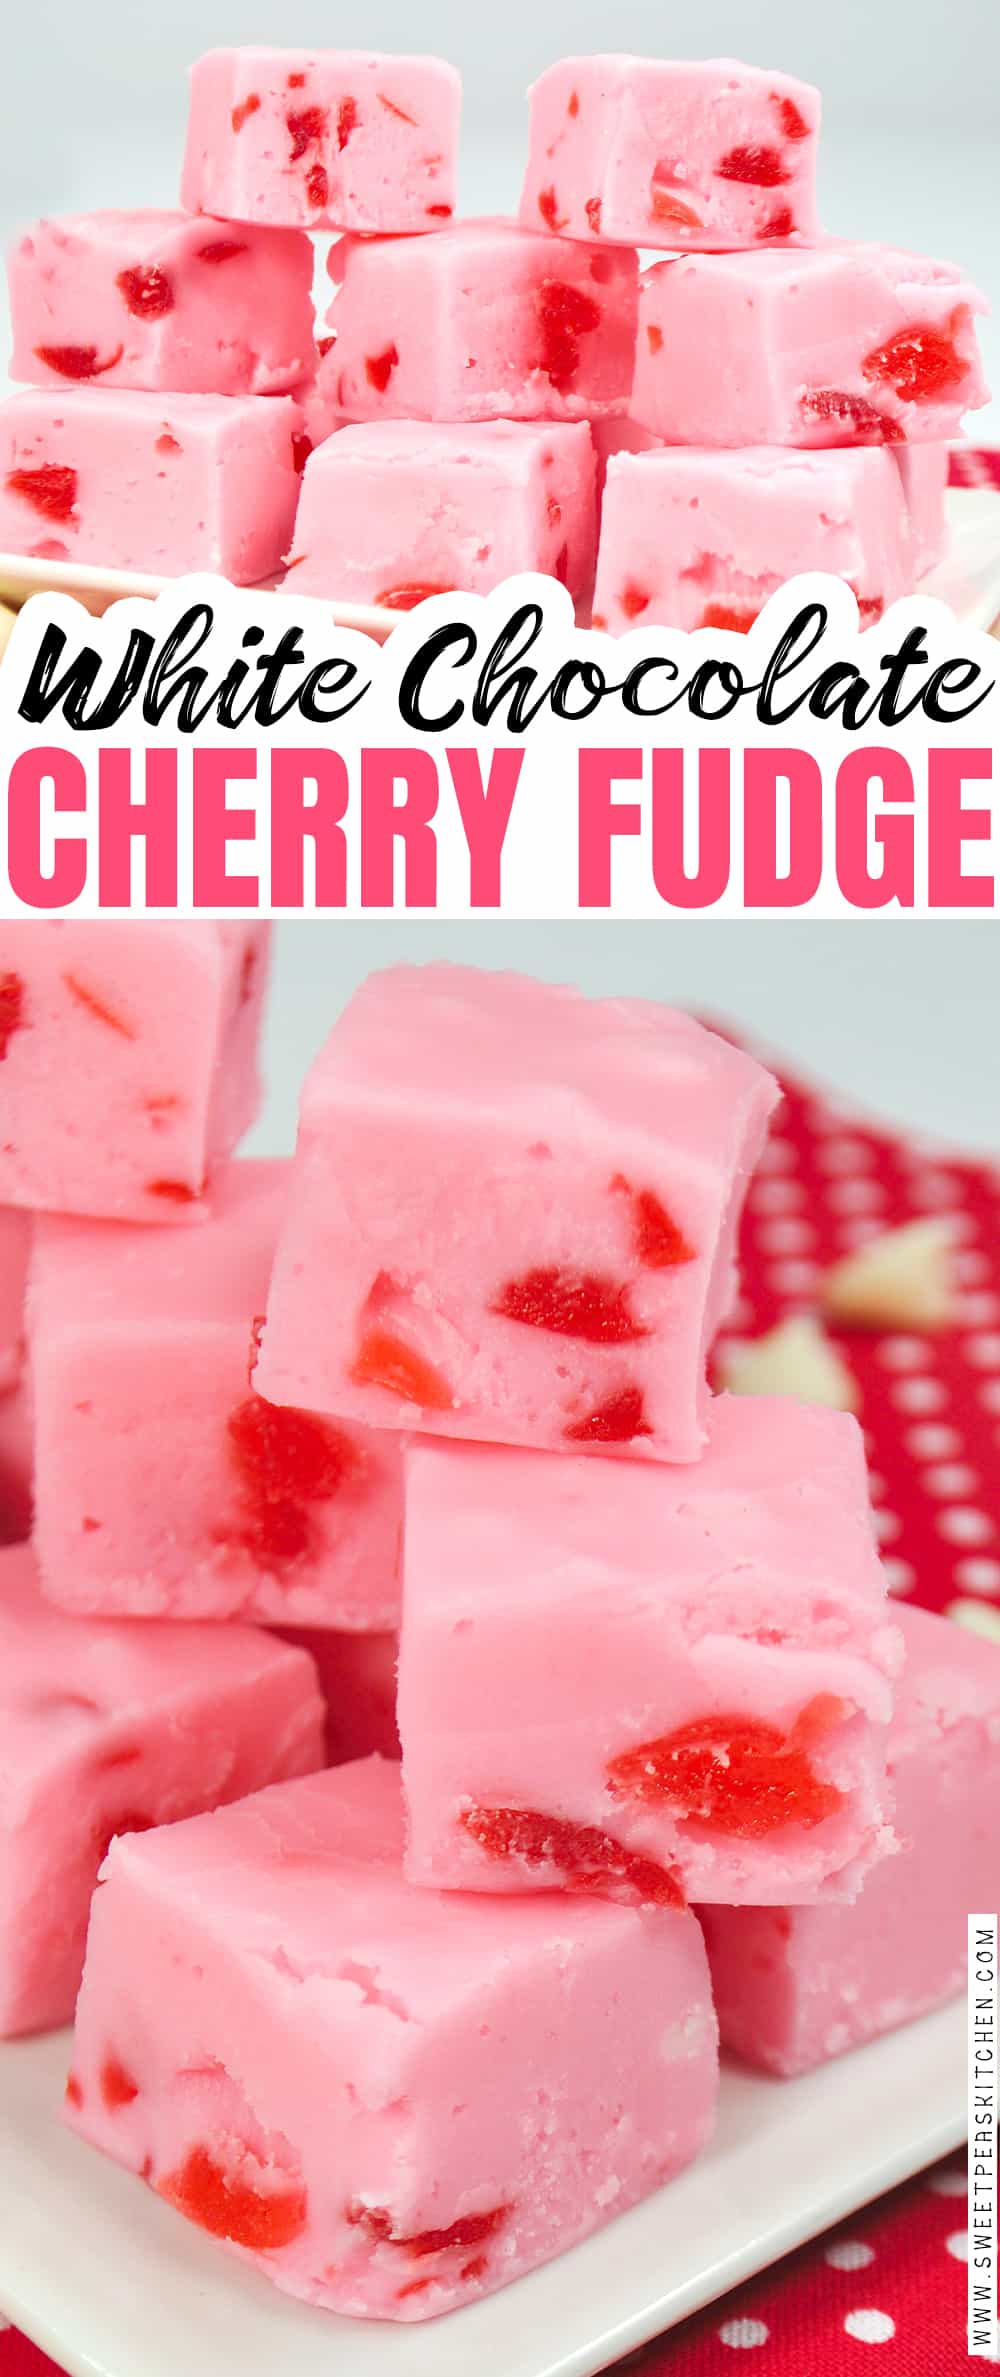 White Chocolate Cherry Fudge